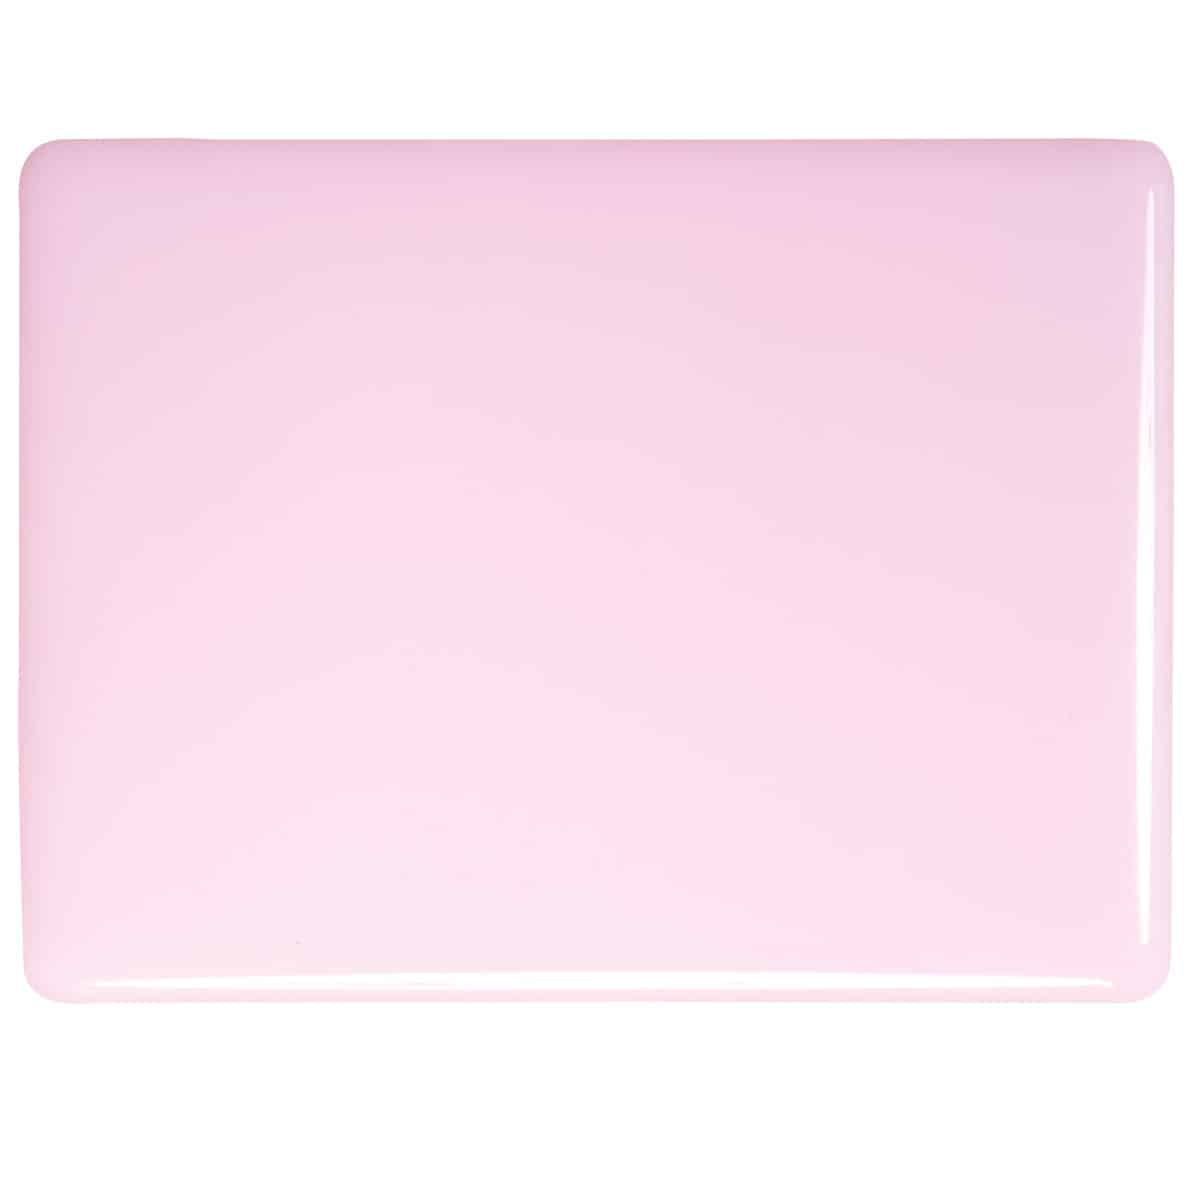 000421 Petal Pink Opalescent